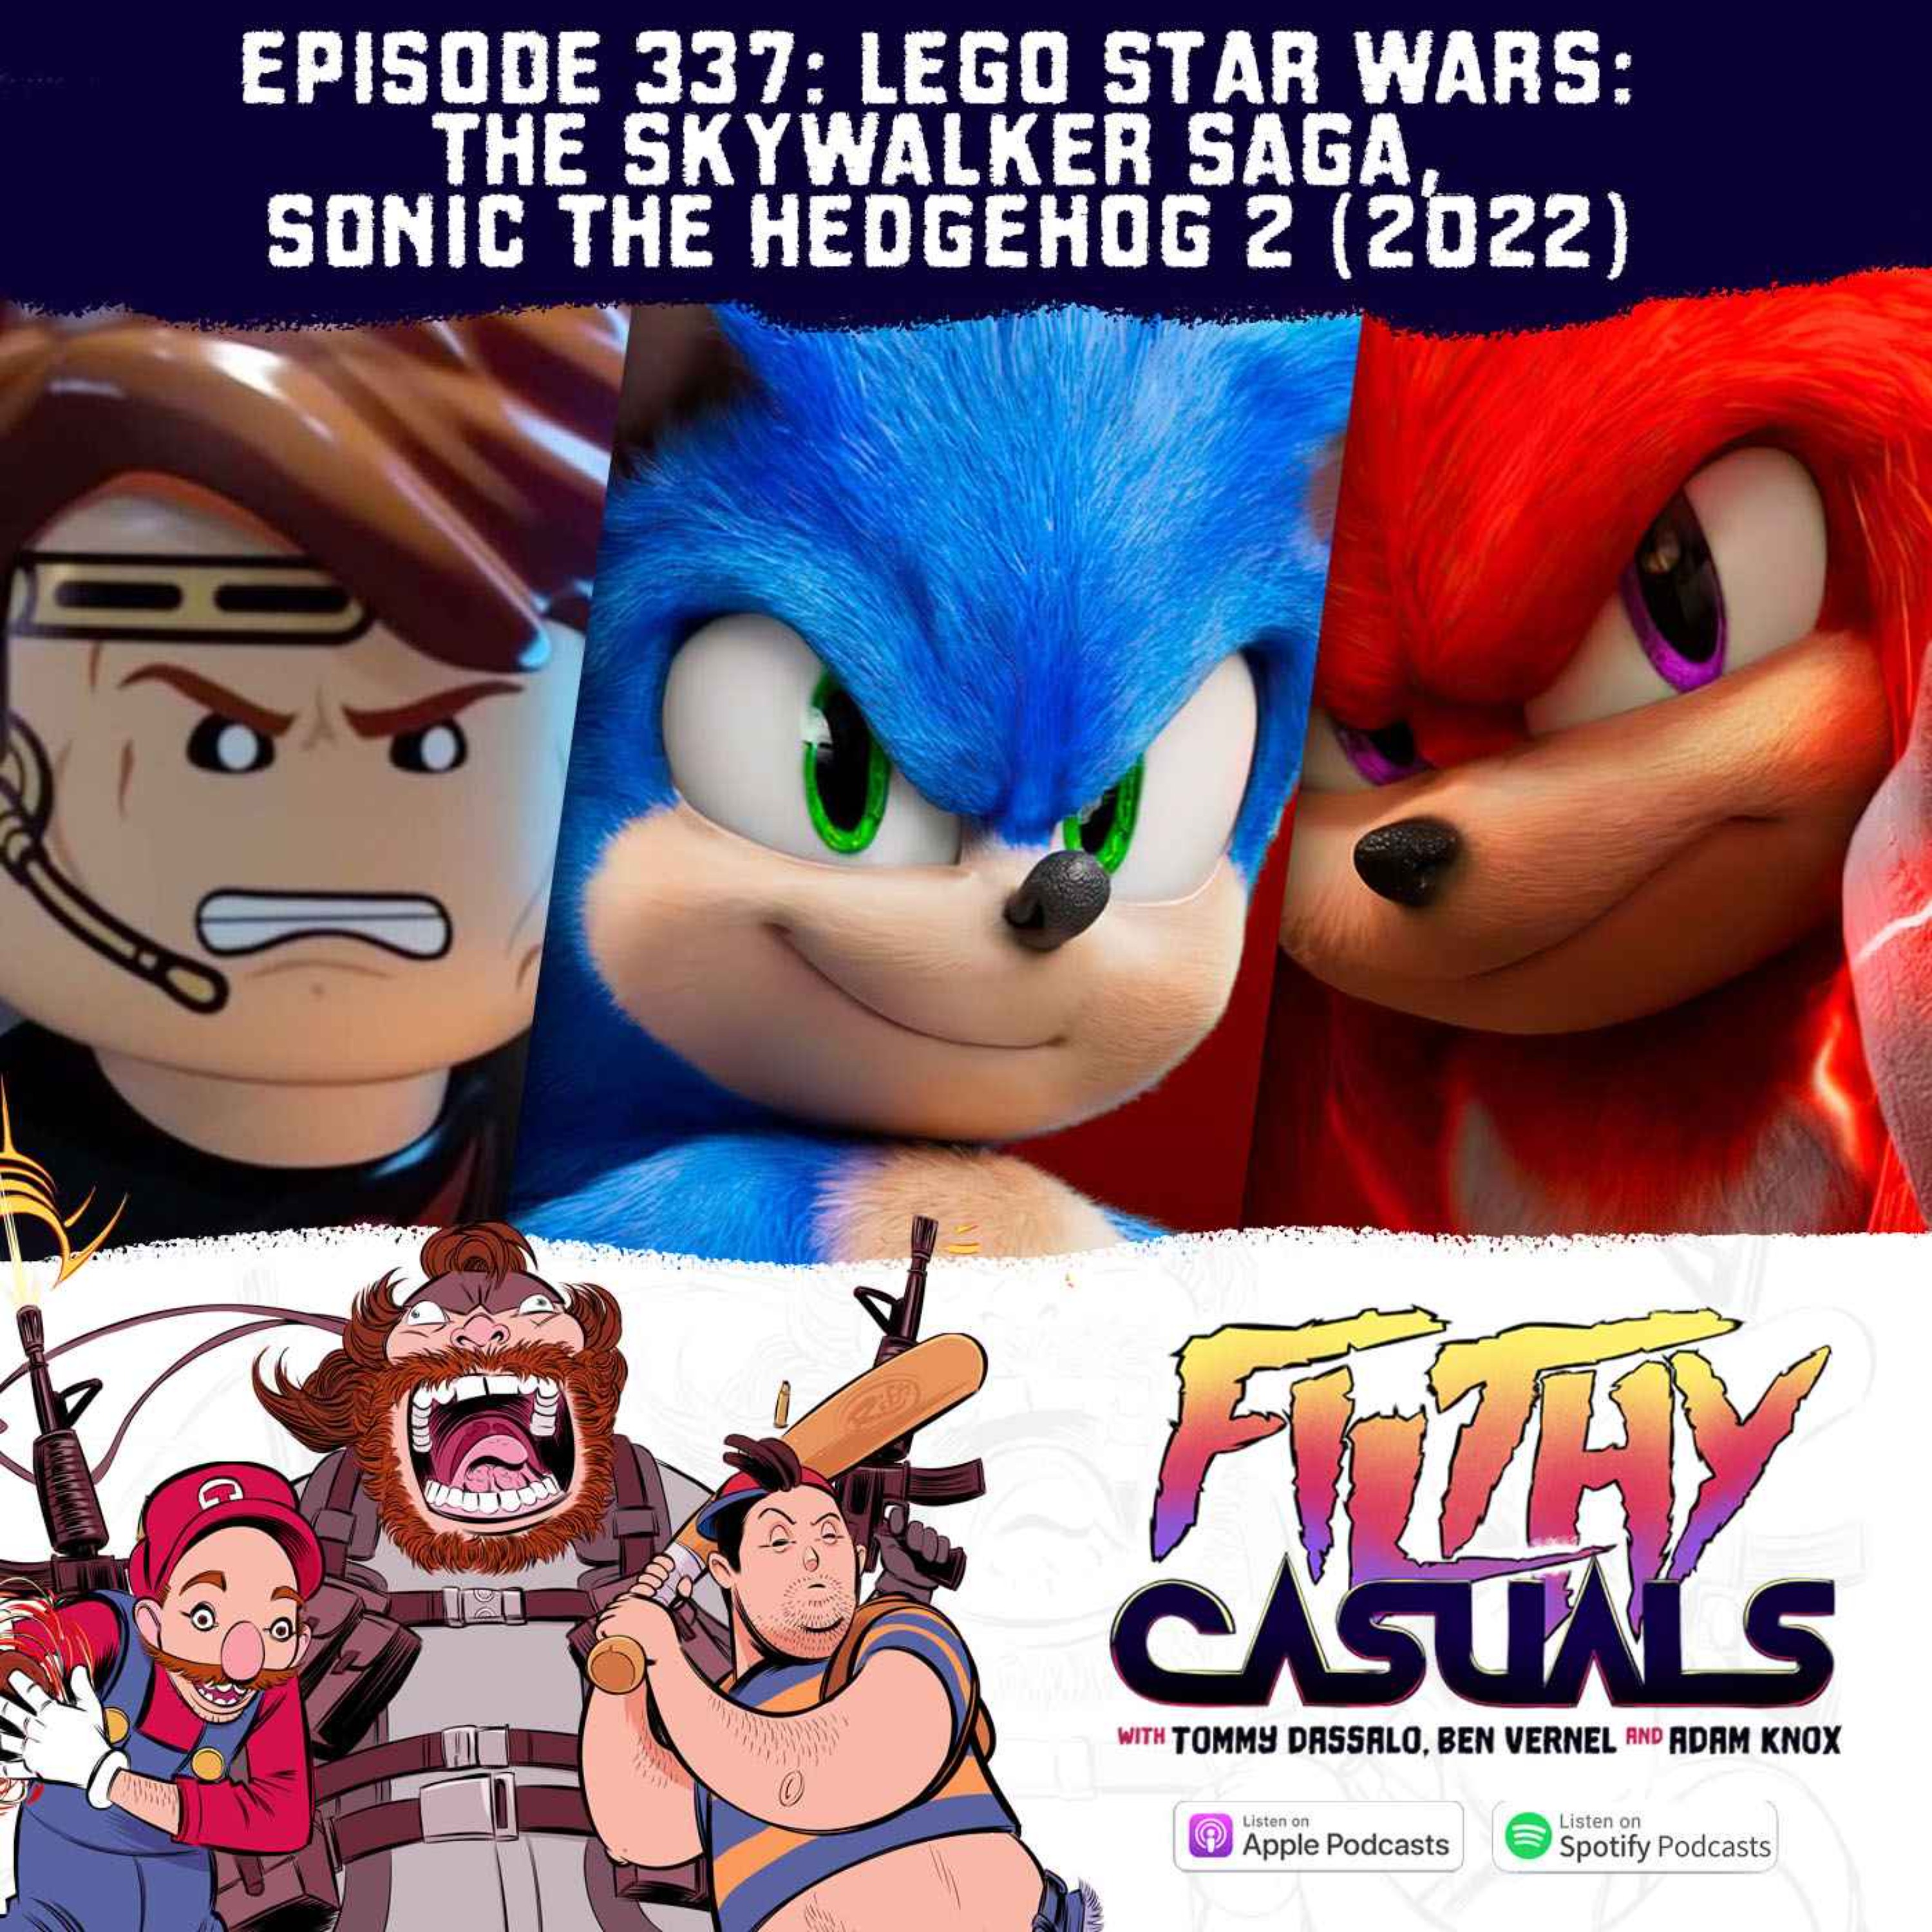 Episode 337: Lego Star Wars: The Skywalker Saga, Sonic The Hedgehog 2 (2022)